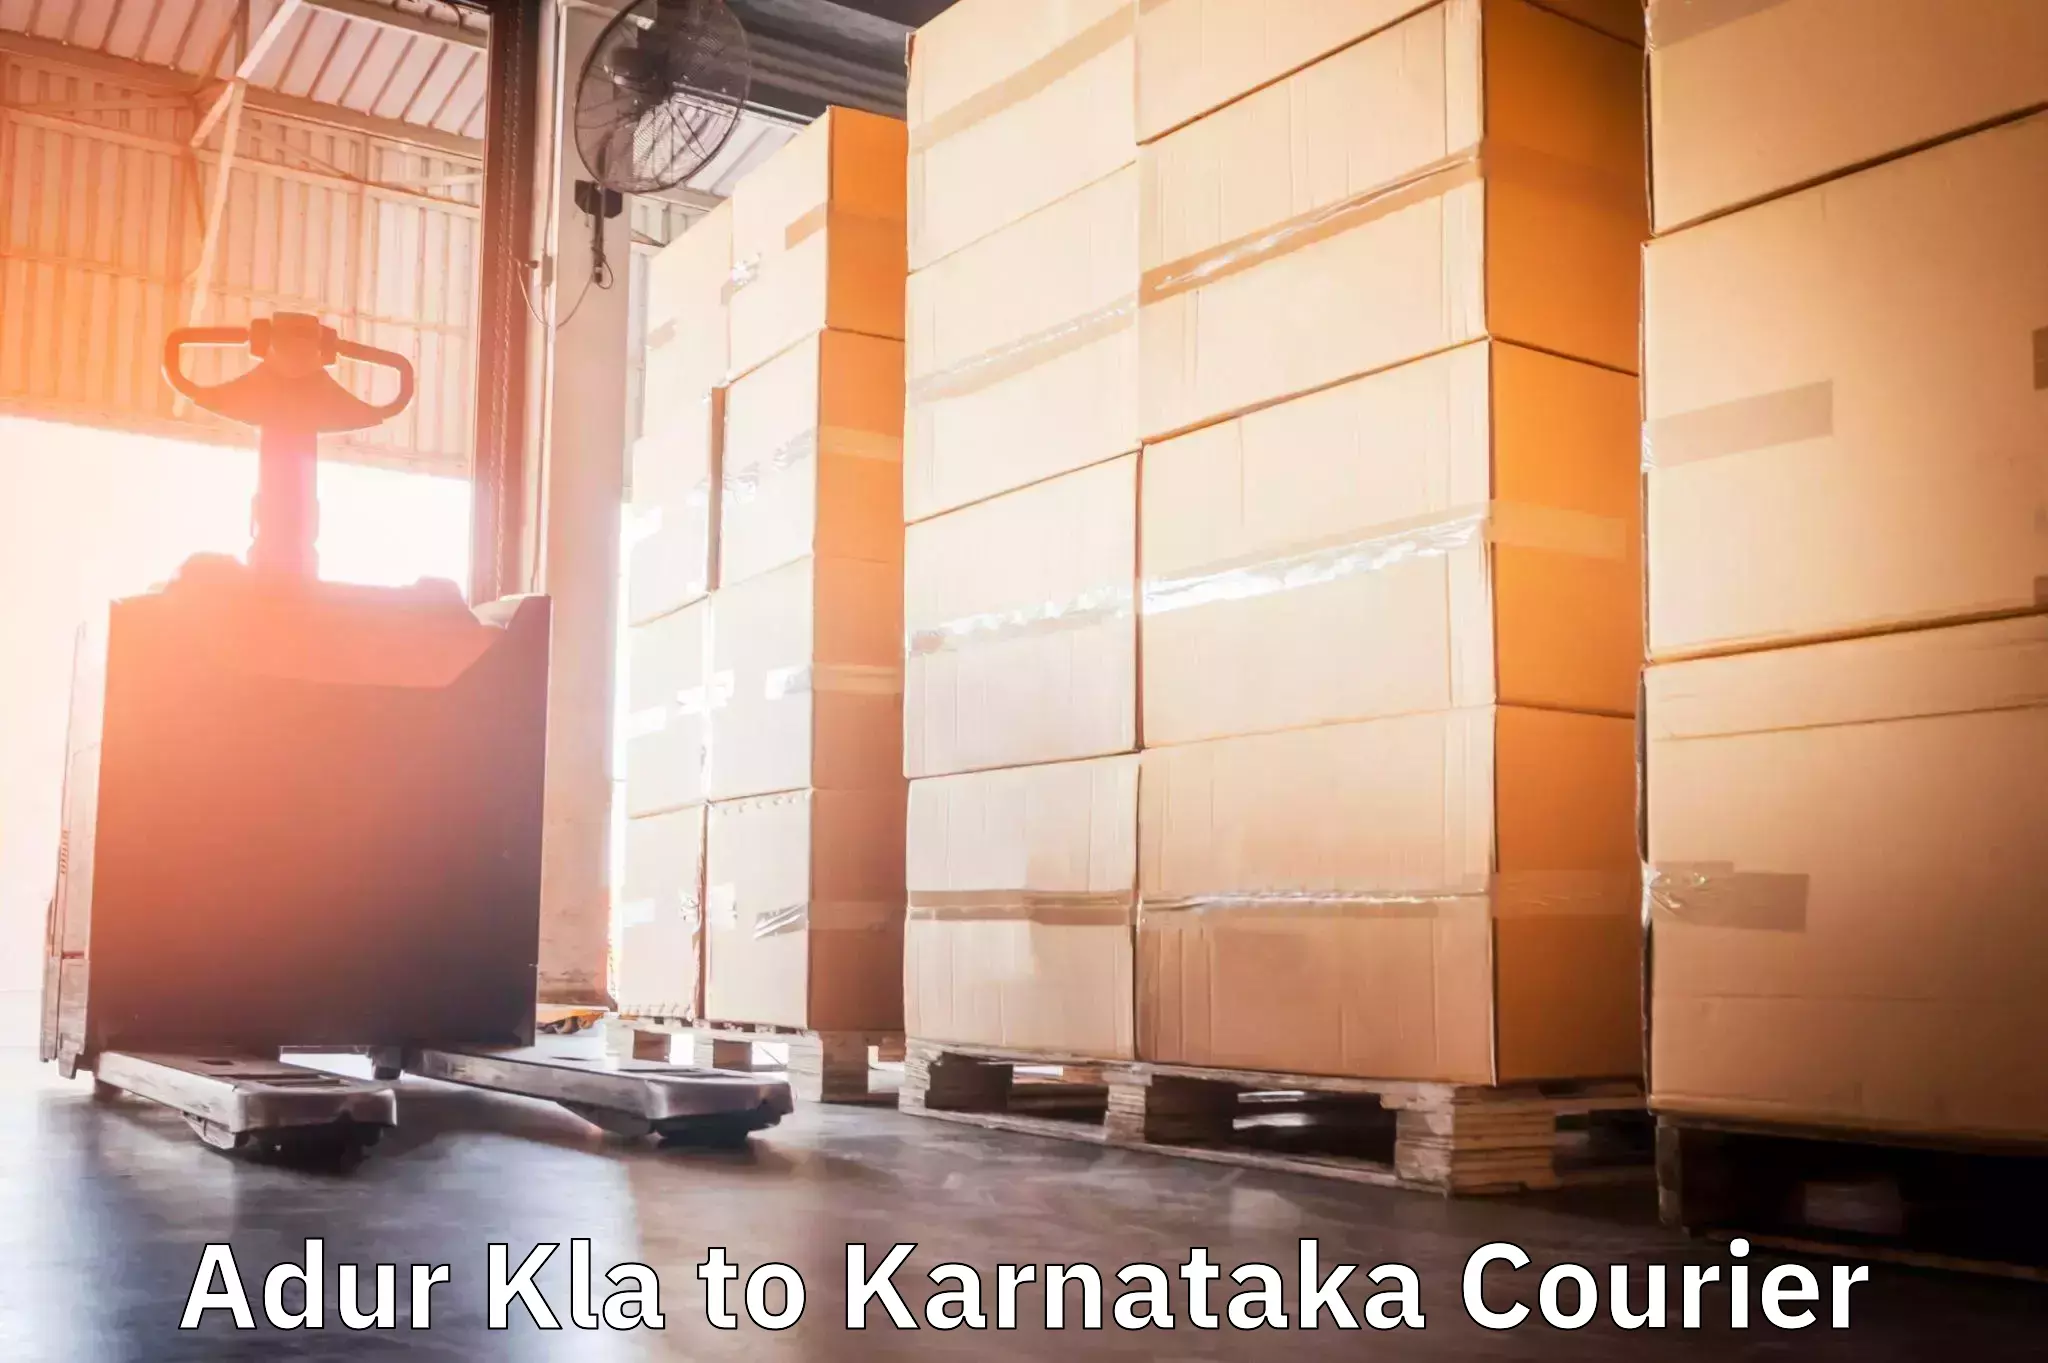 Automated parcel services Adur Kla to Mangalore